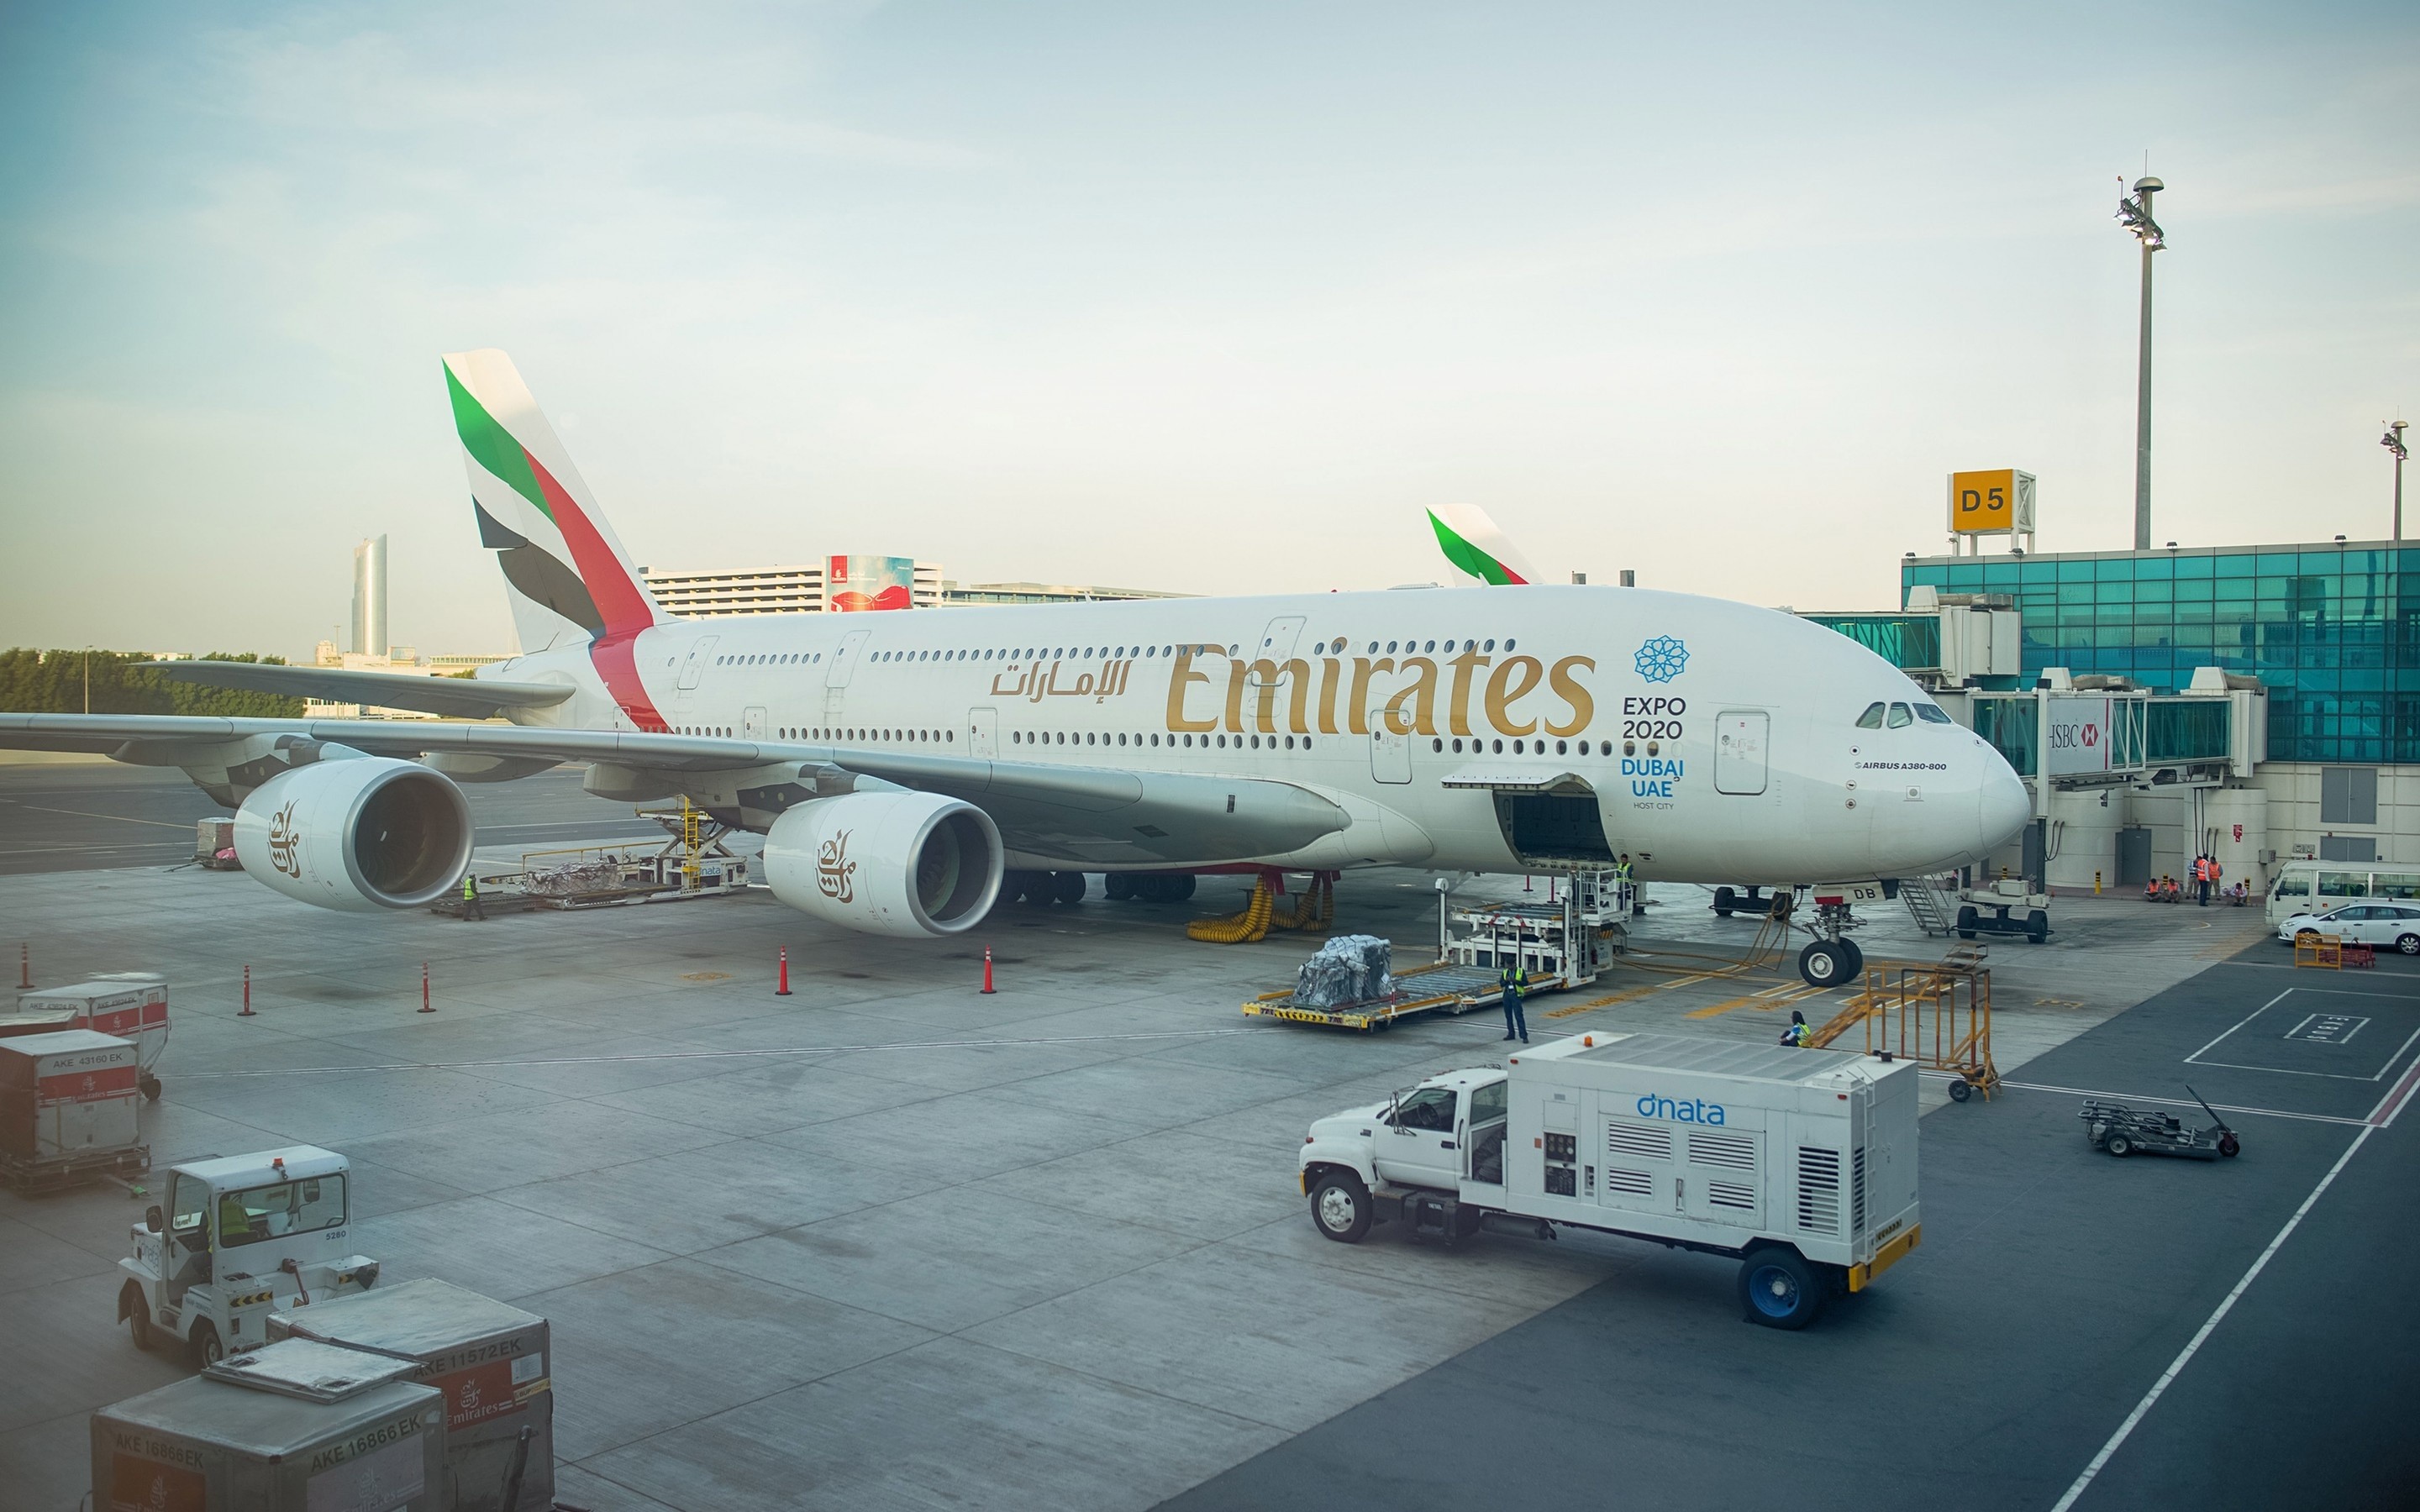 2880x1800 aircraft, airliner, Airbus, Airbus A380-800, Emirates, UAE, Dubai